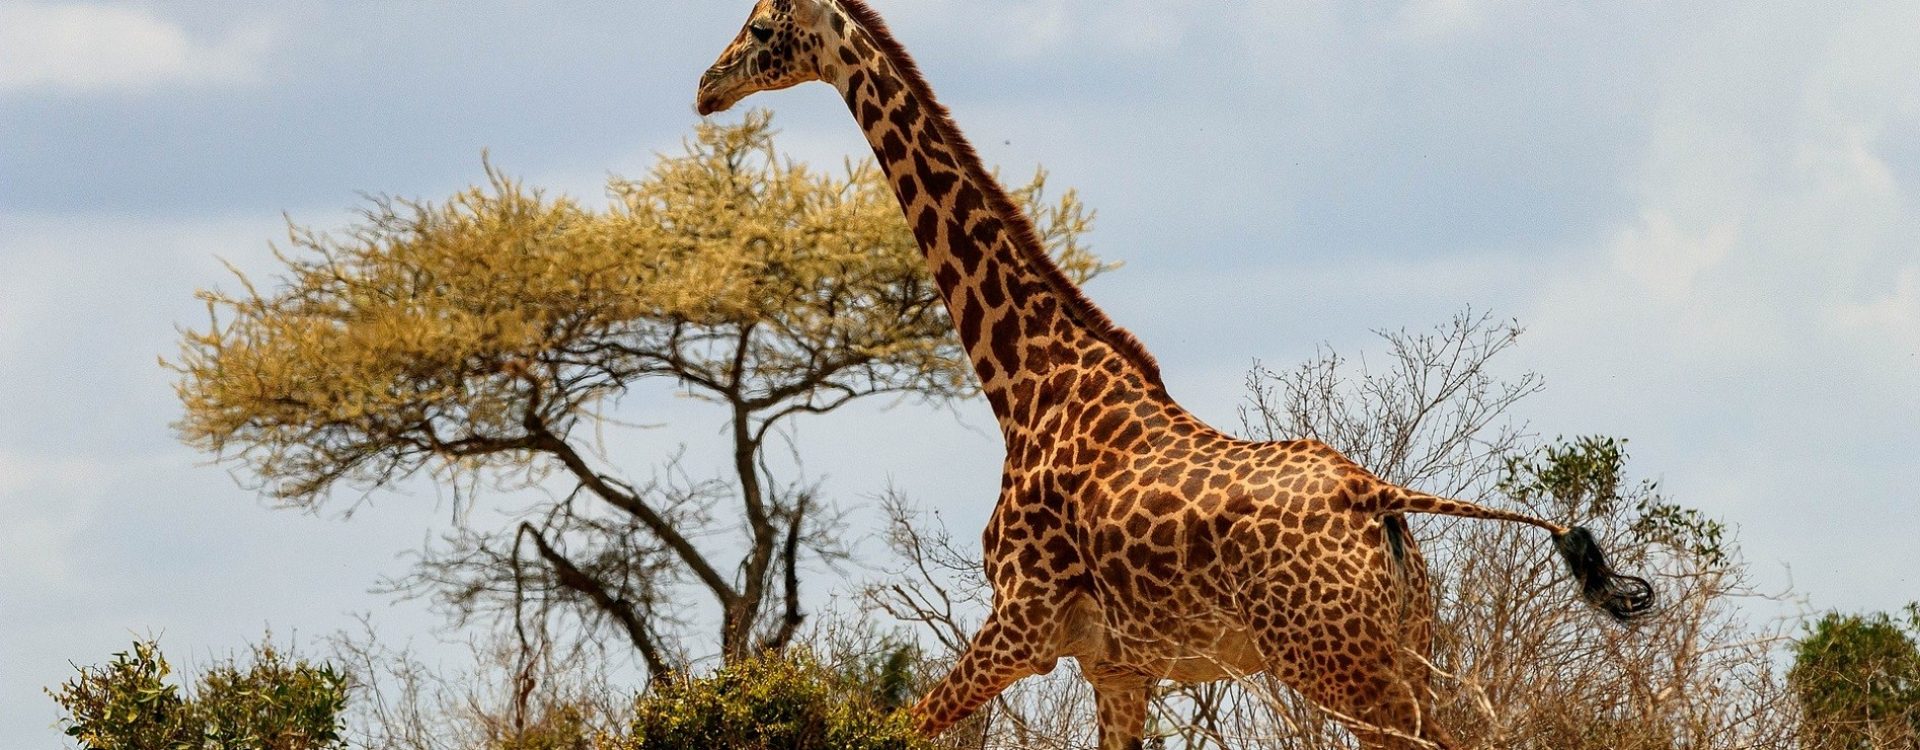 žirafa u prirodnom okruženju u Safariu Maasai mara u Keniji